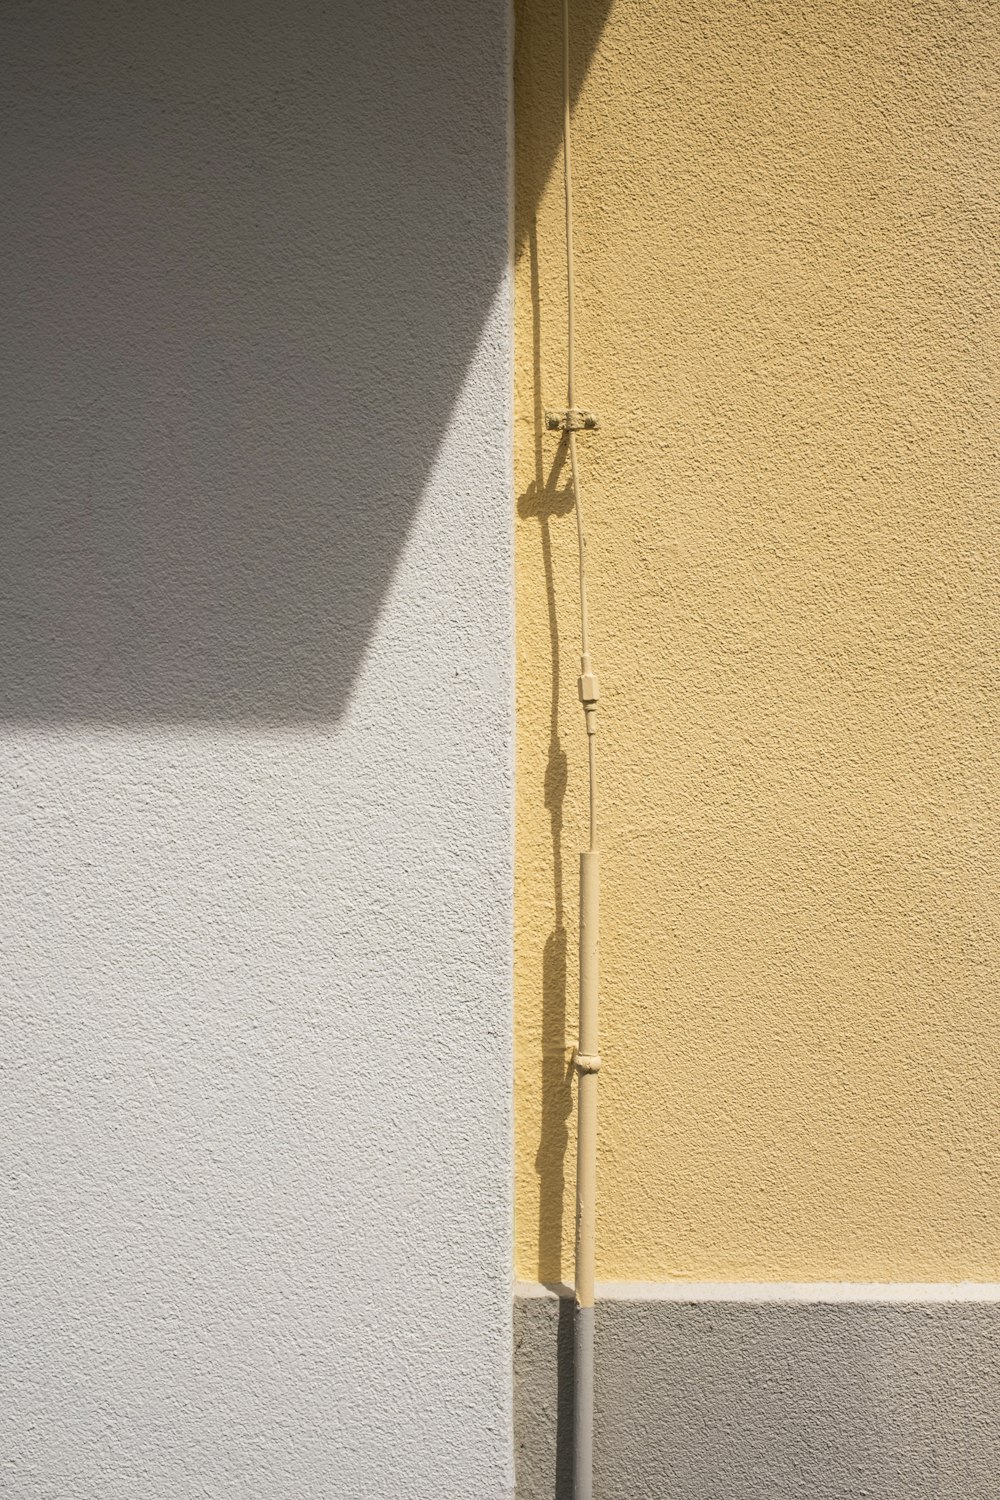 yellow wooden door with silver door lever